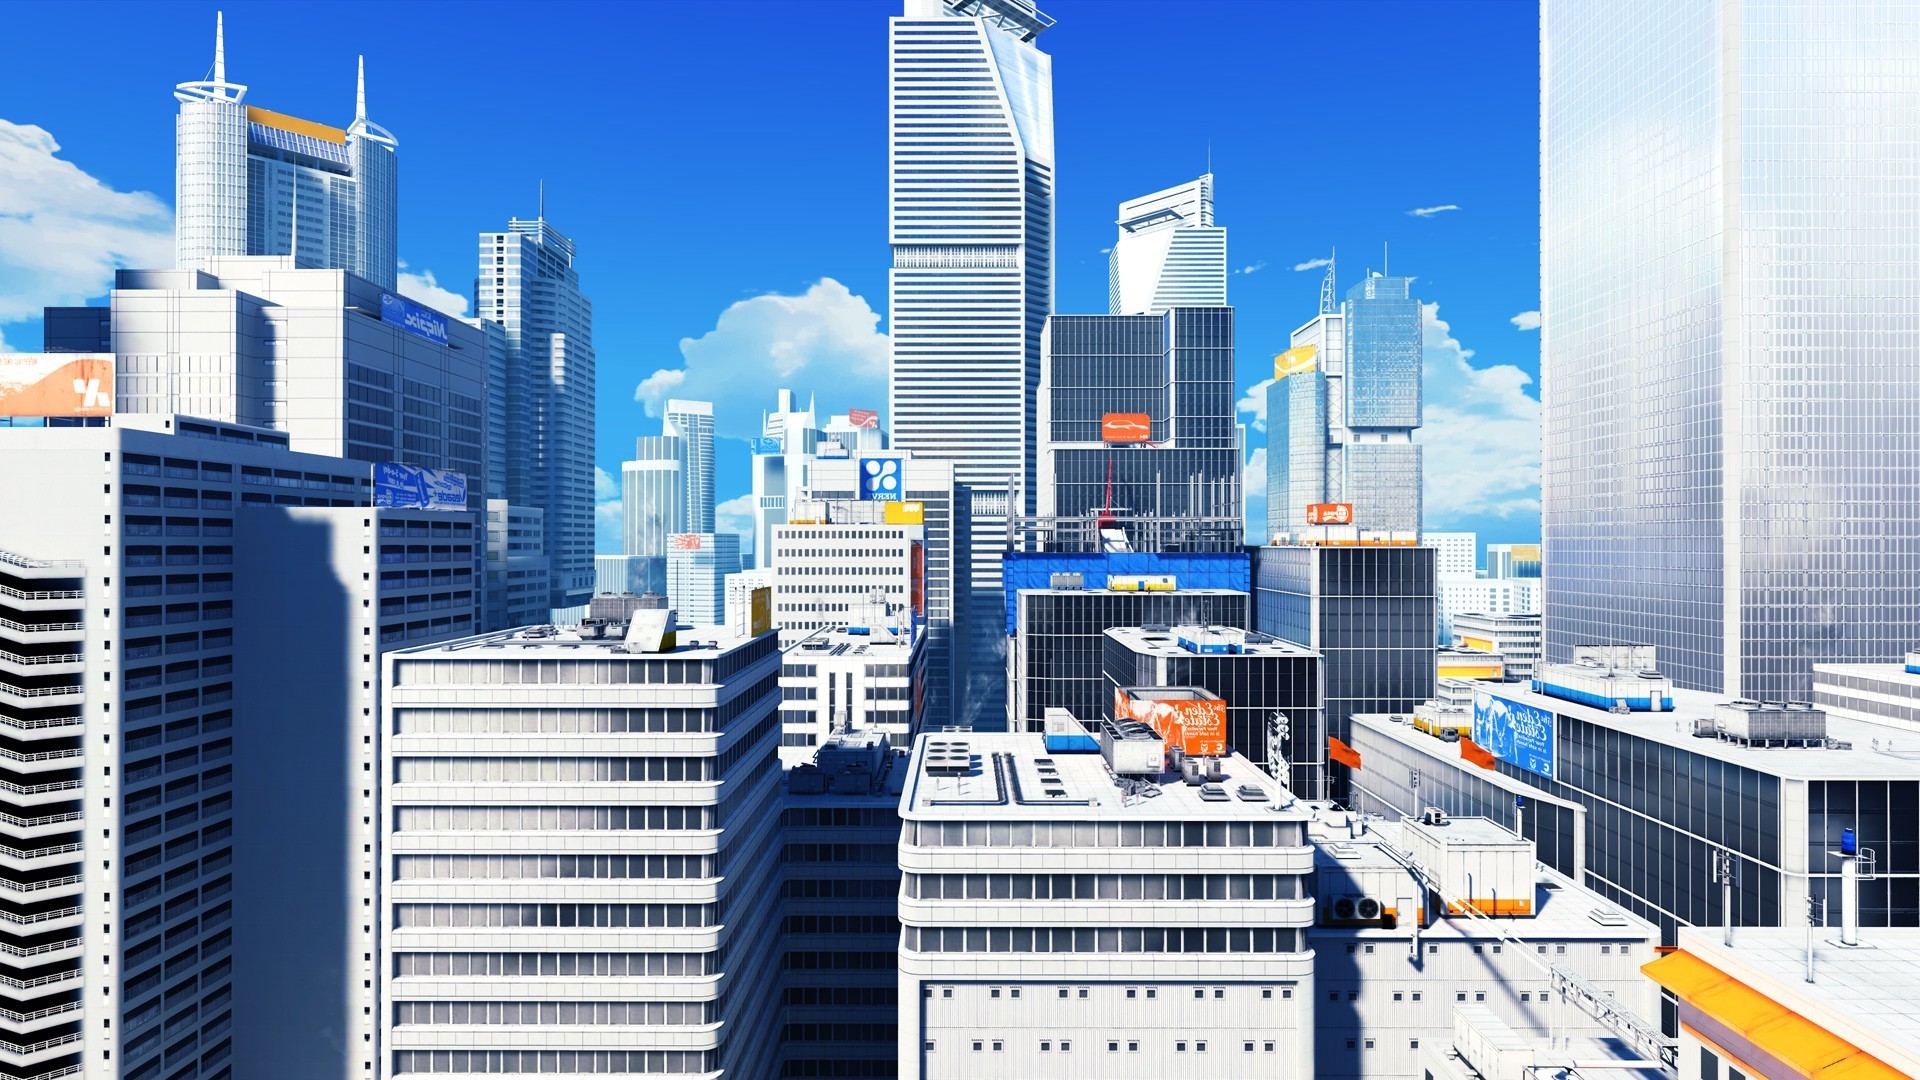 Mirrors Edge, Screenshots, Video Games, Cityscape, Skyscraper ...